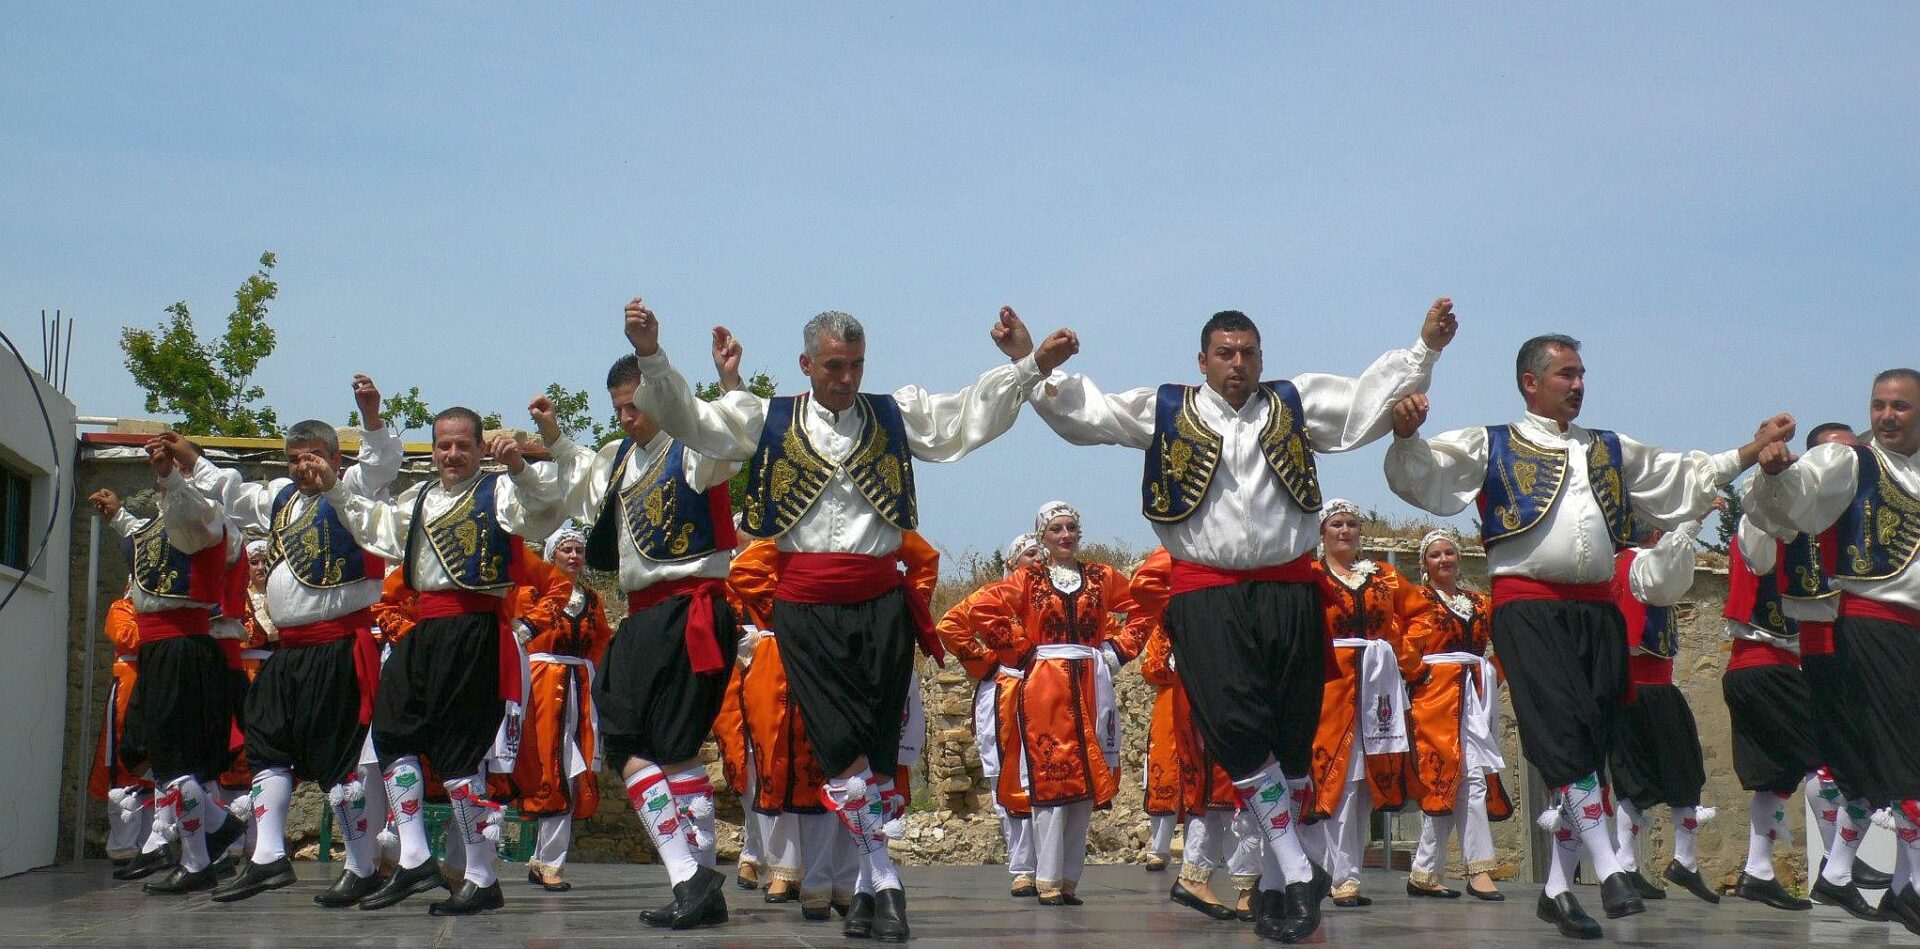 Cultuur vieren: feestelijke hoogtepunten van Noord-Cyprus